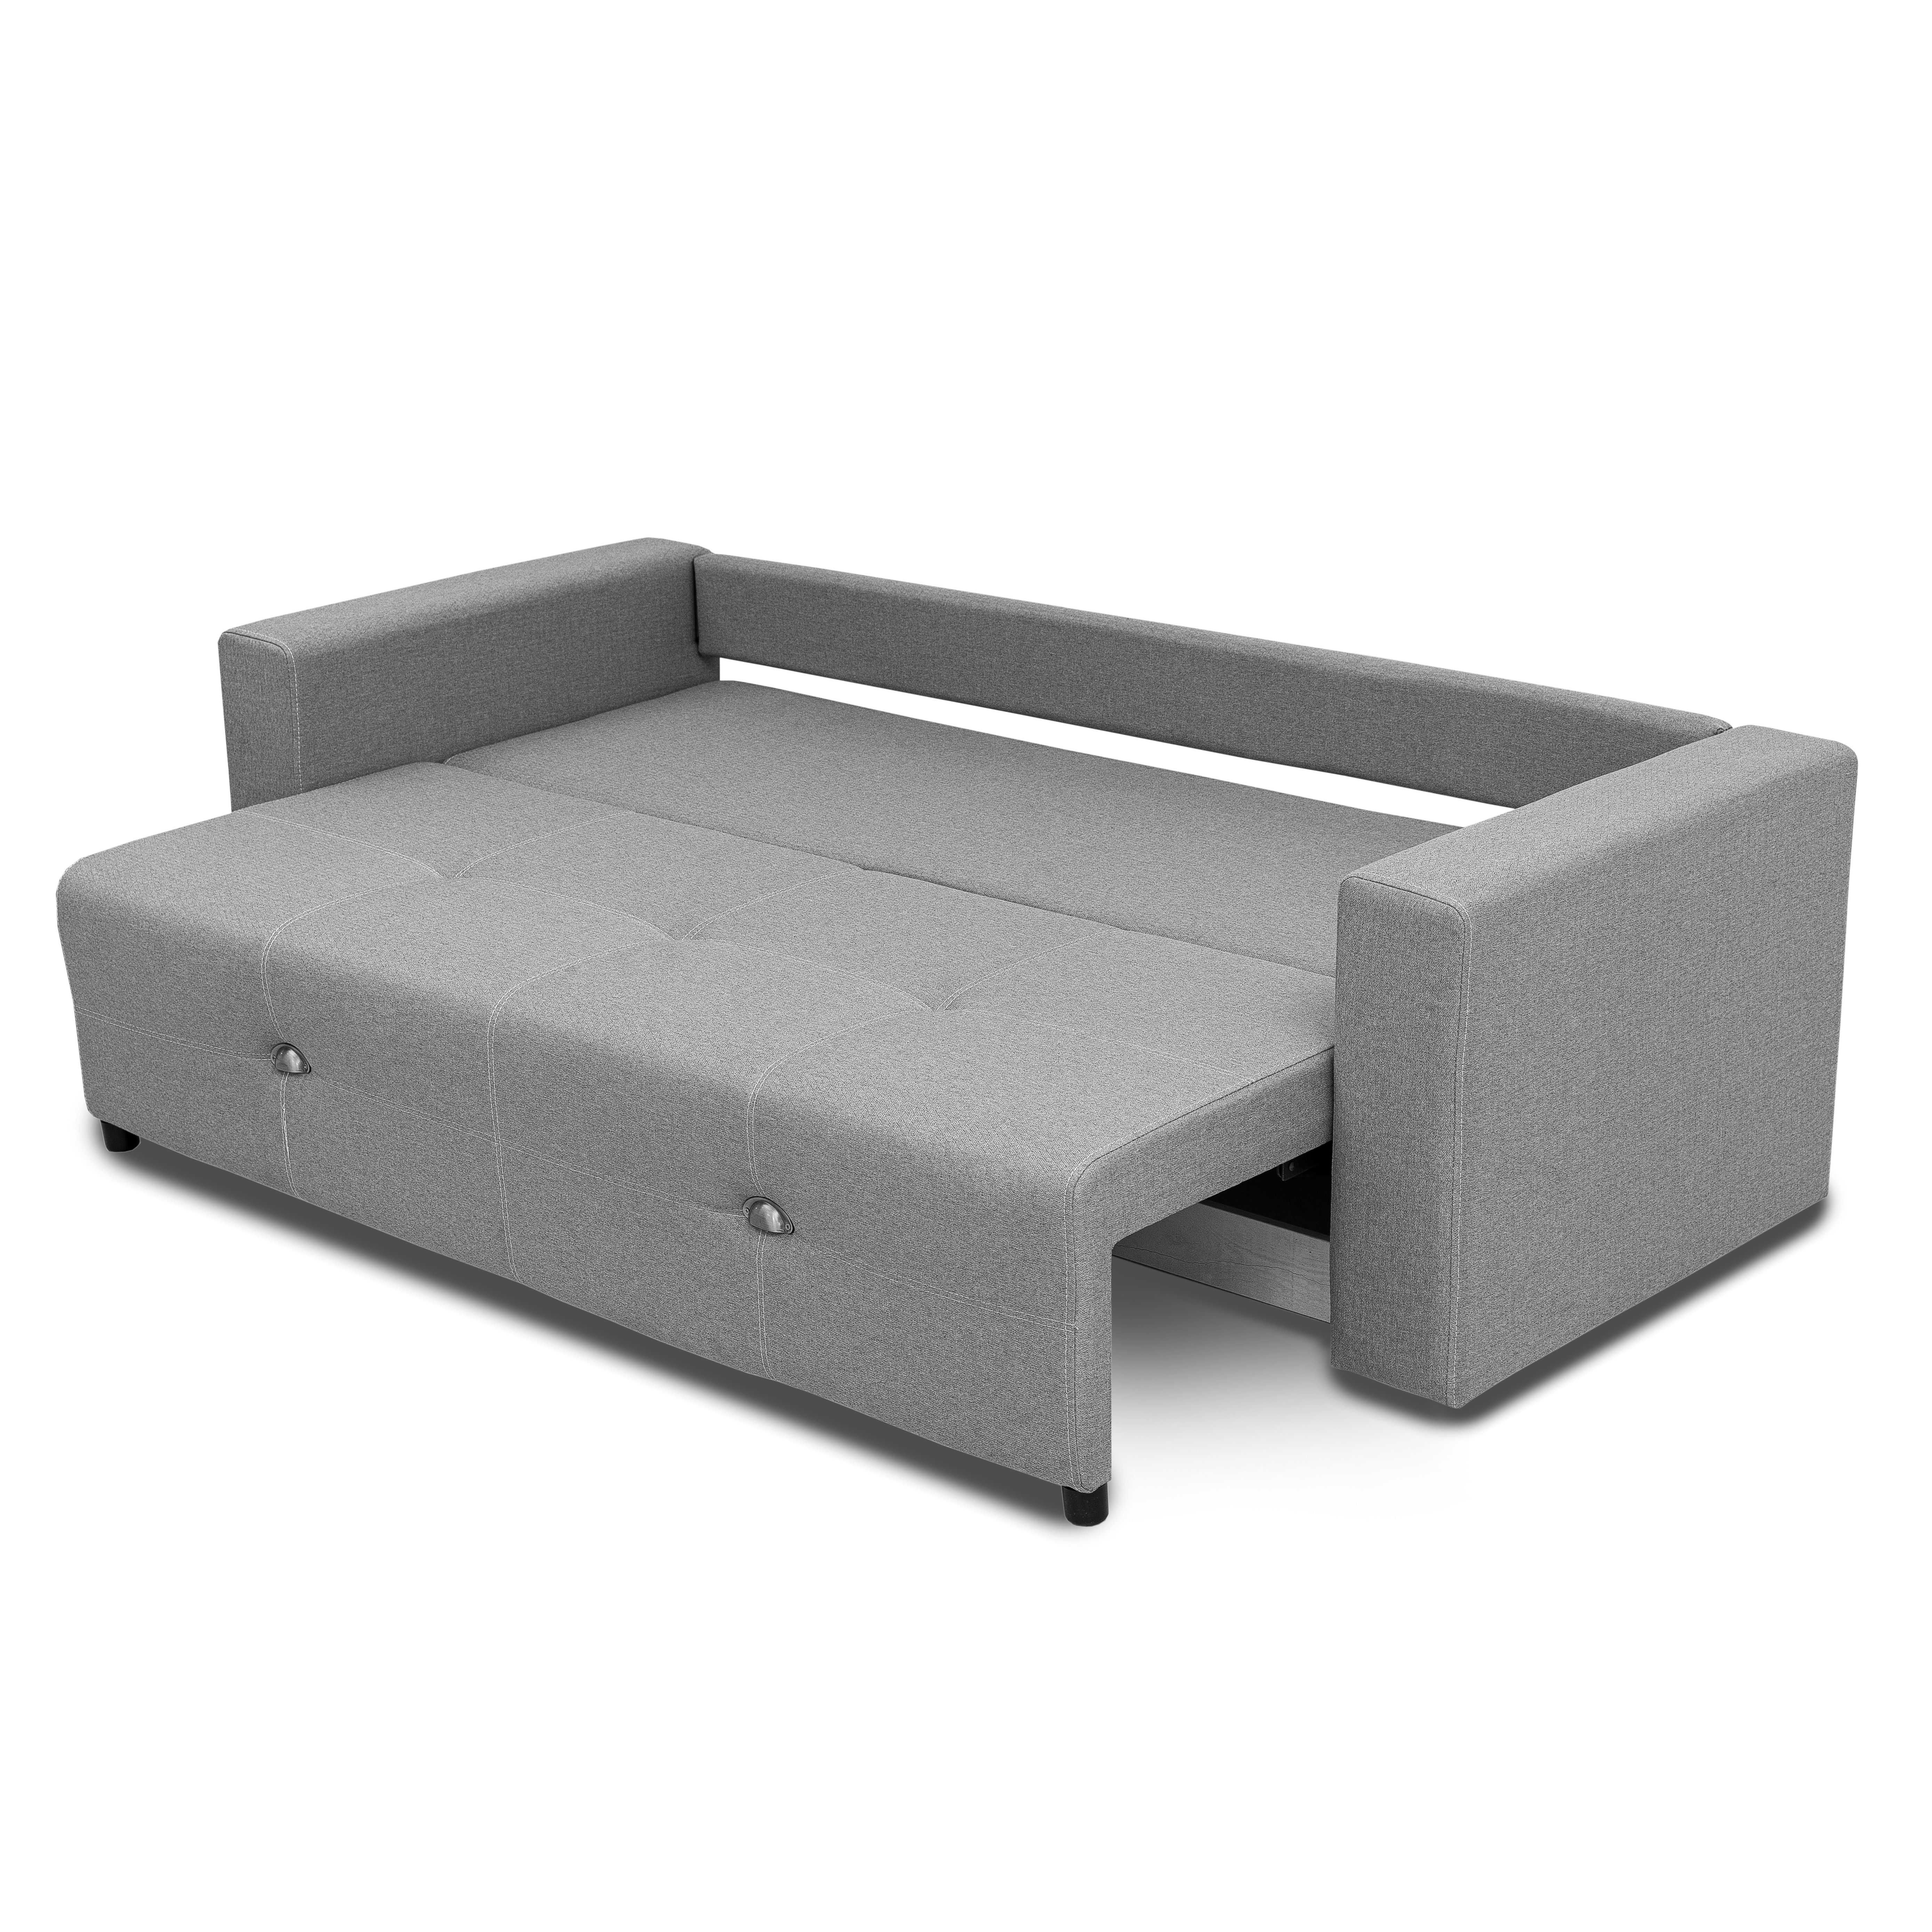 Мягкая мебель Бостон серый новый диван подлокотник прямой Доставка